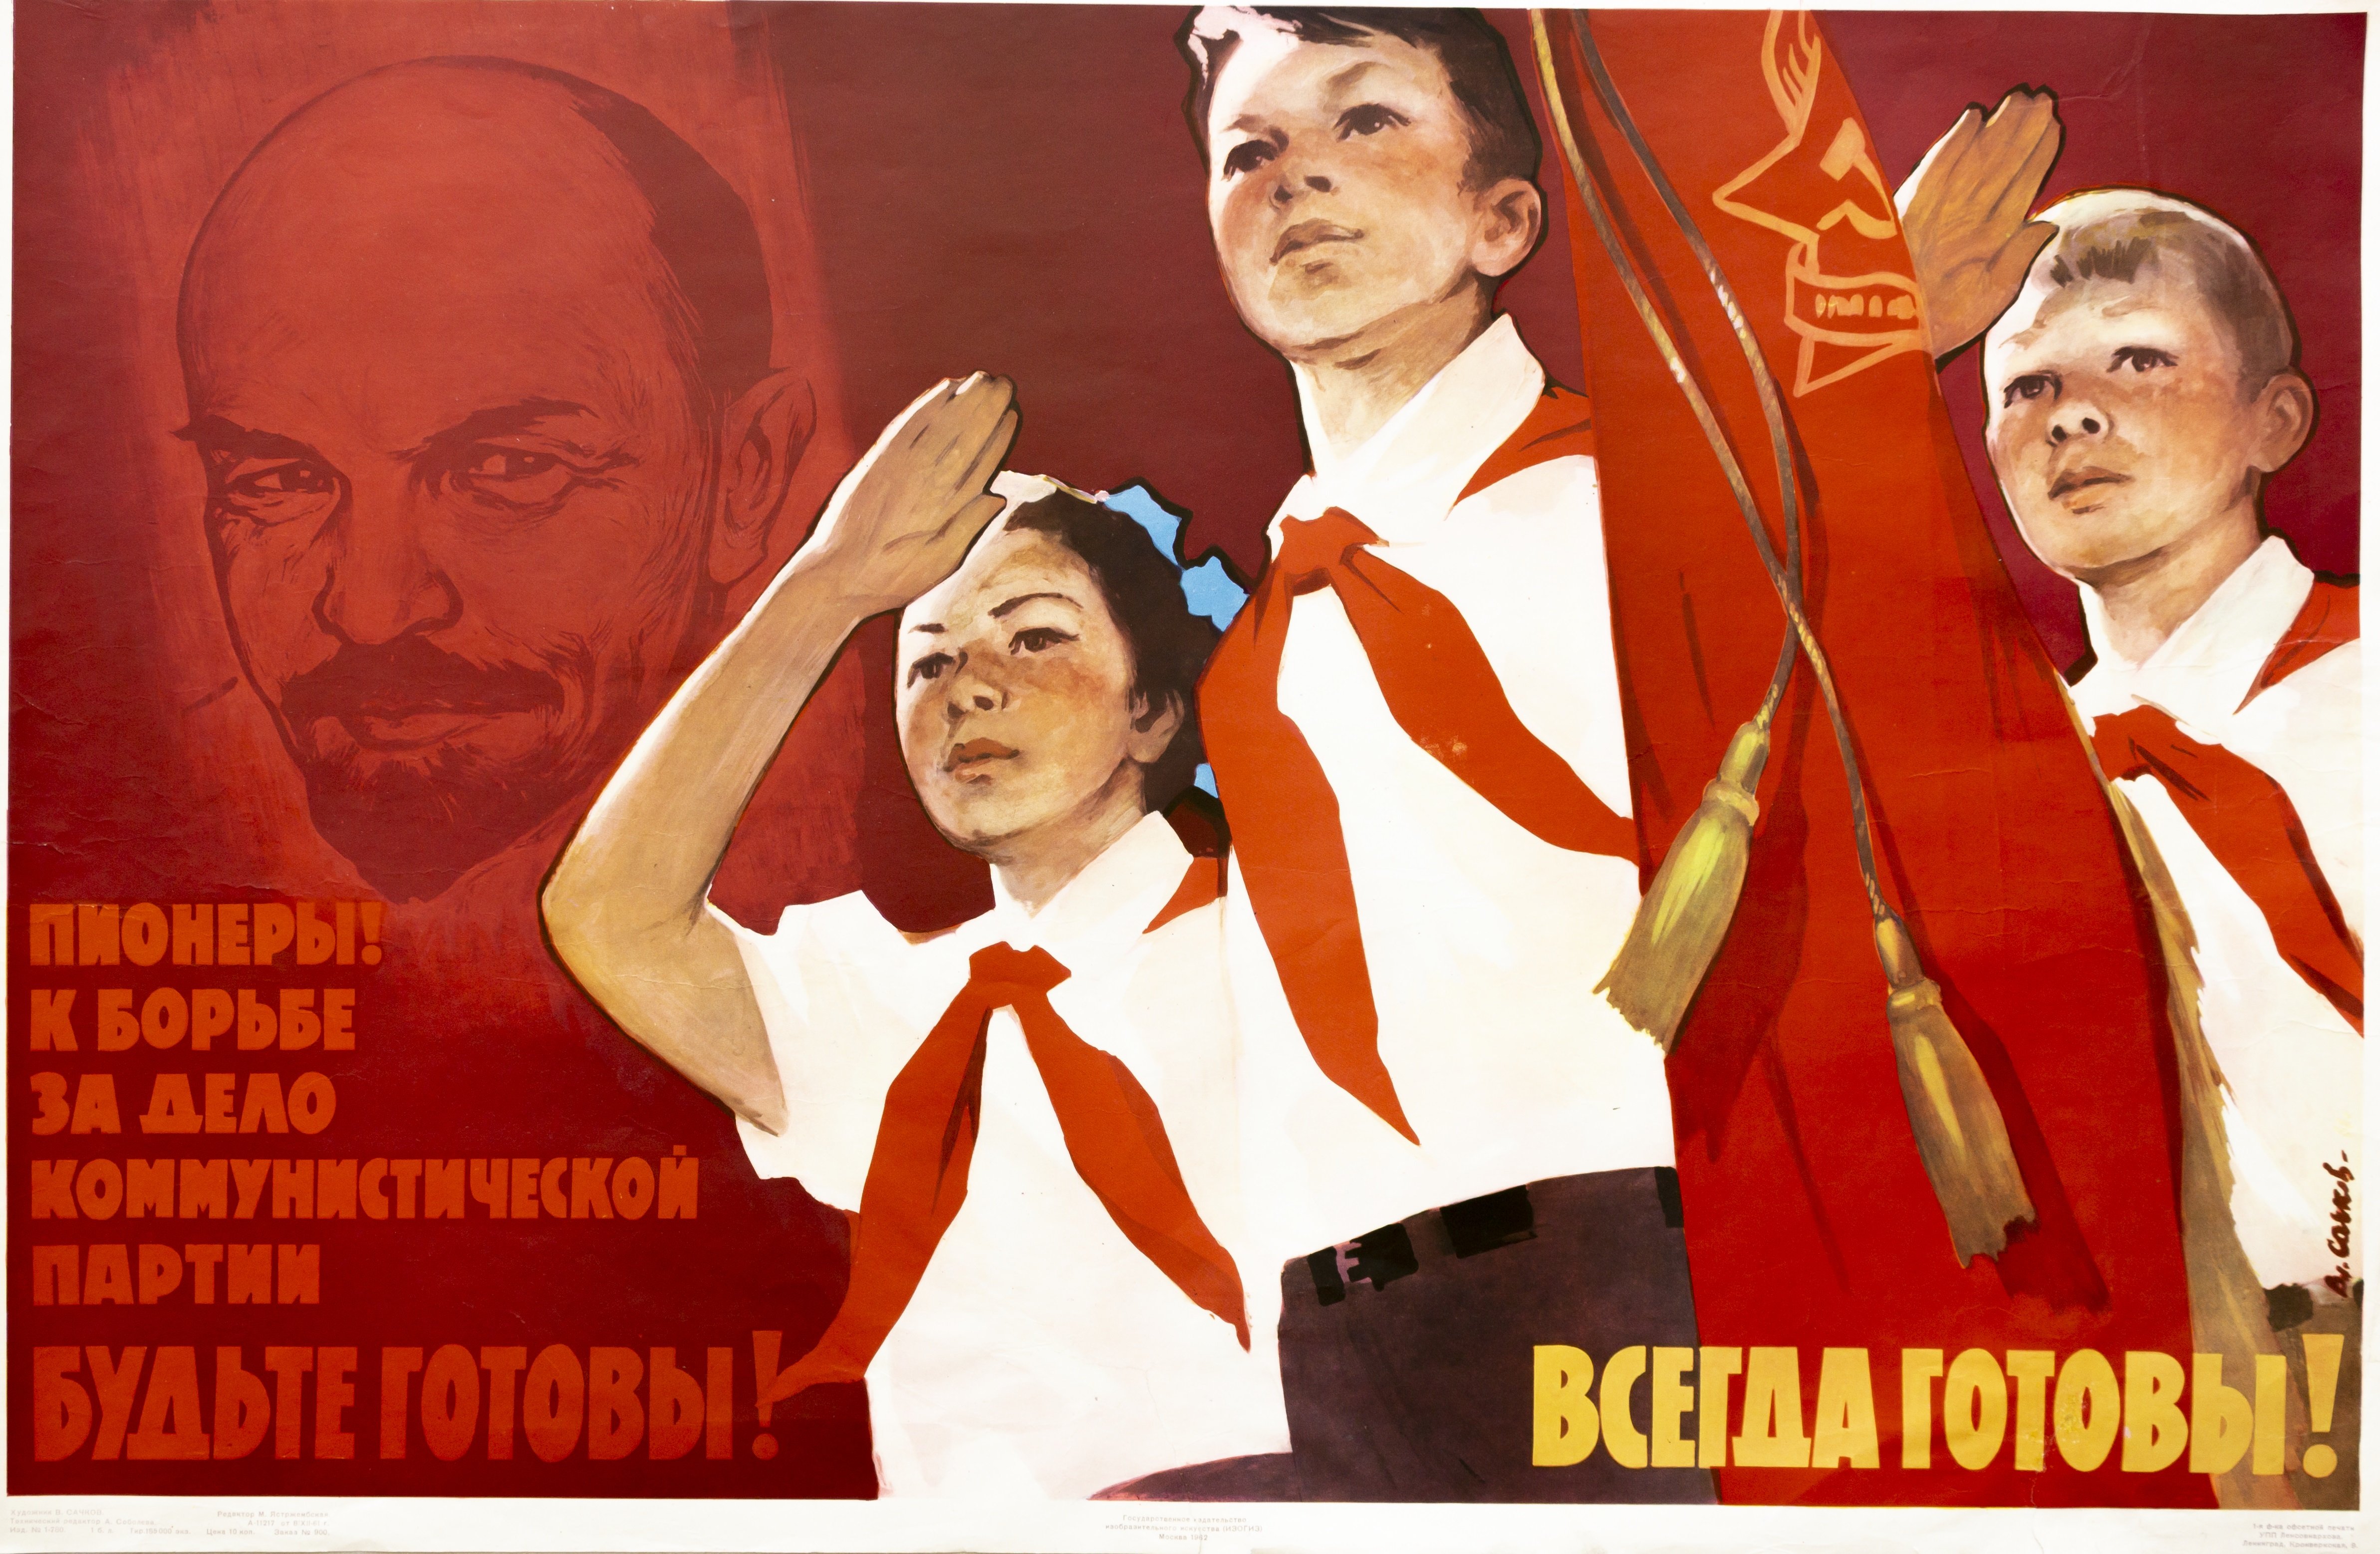 Пионера всегда будь готов. Пионерские плакаты. Пионеры плакаты. Пионерские плакаты и лозунги. Советские пионерские плакаты.